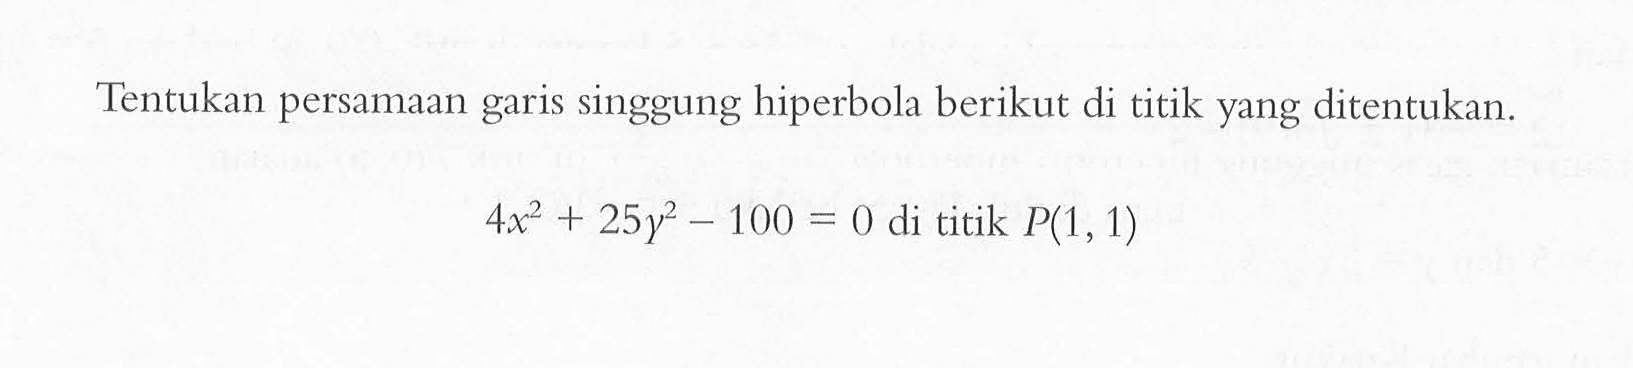 Tentukan persamaan garis singgung hiperbola berikut di titik yang ditentukan. 4x^2+25y^2-100=0 di titik P(1,1)